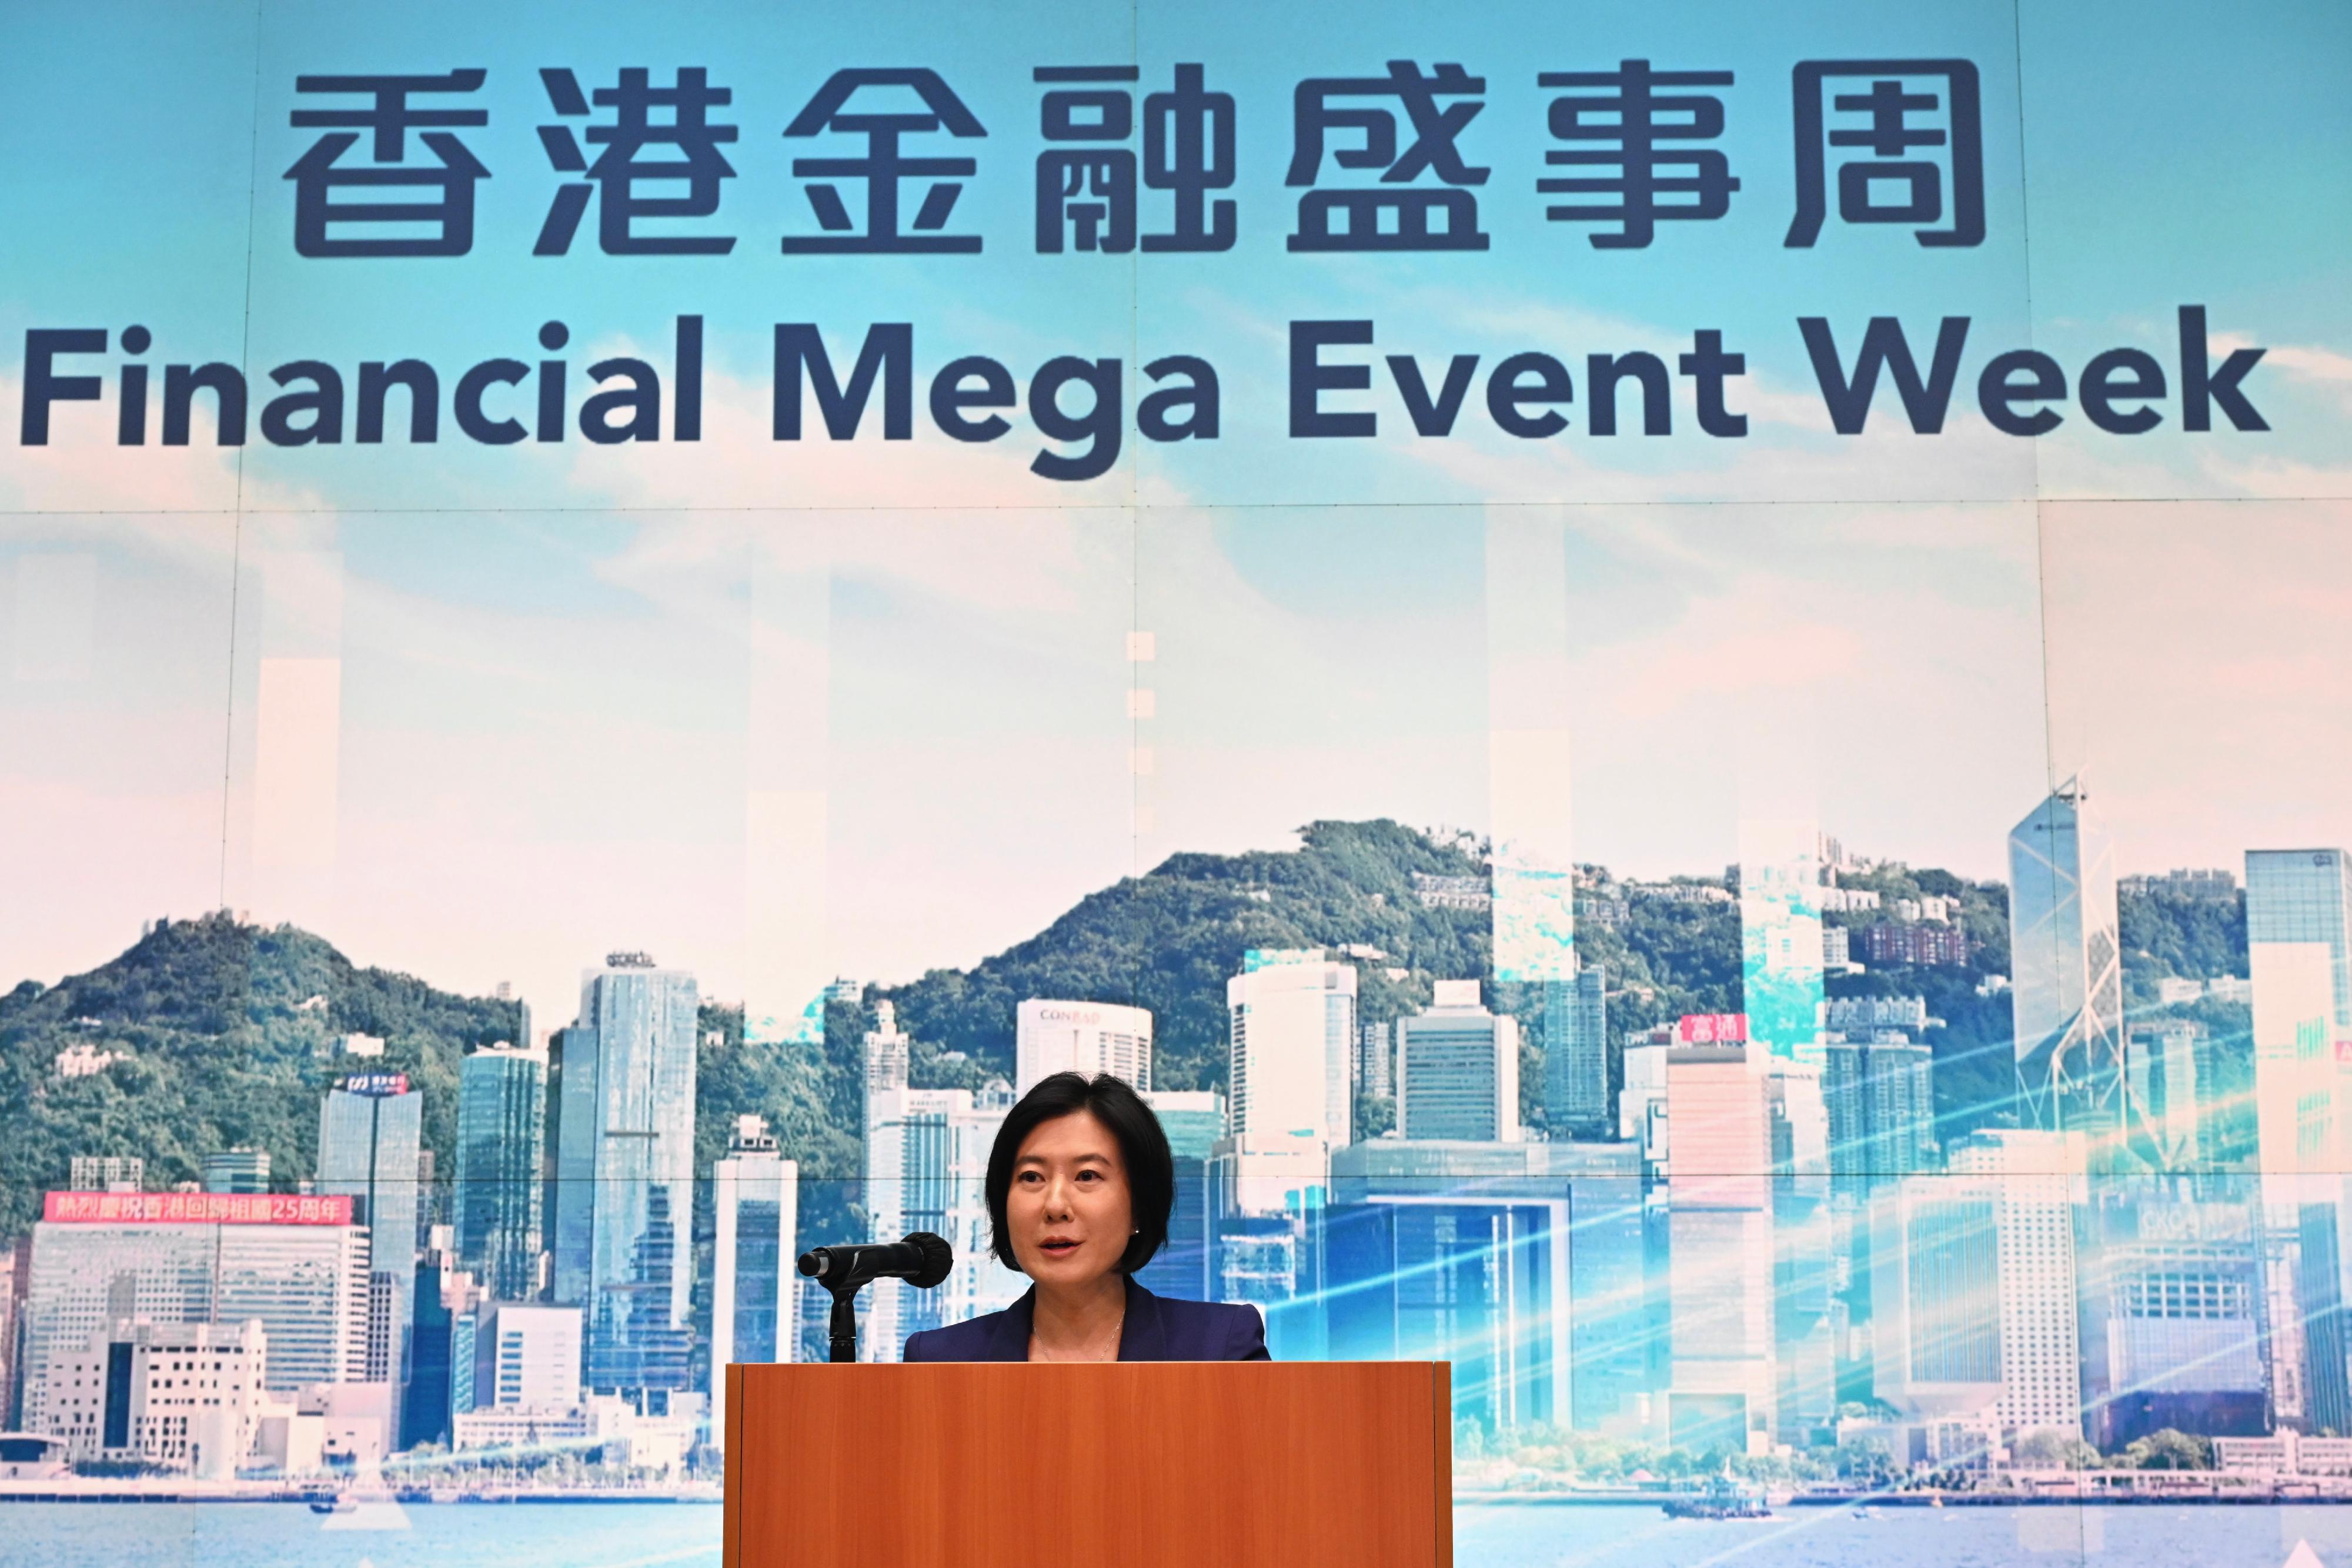 投資推廣署署長劉凱旋今日（三月七日）於金融盛事周啓動儀式上回應傳媒提問。
